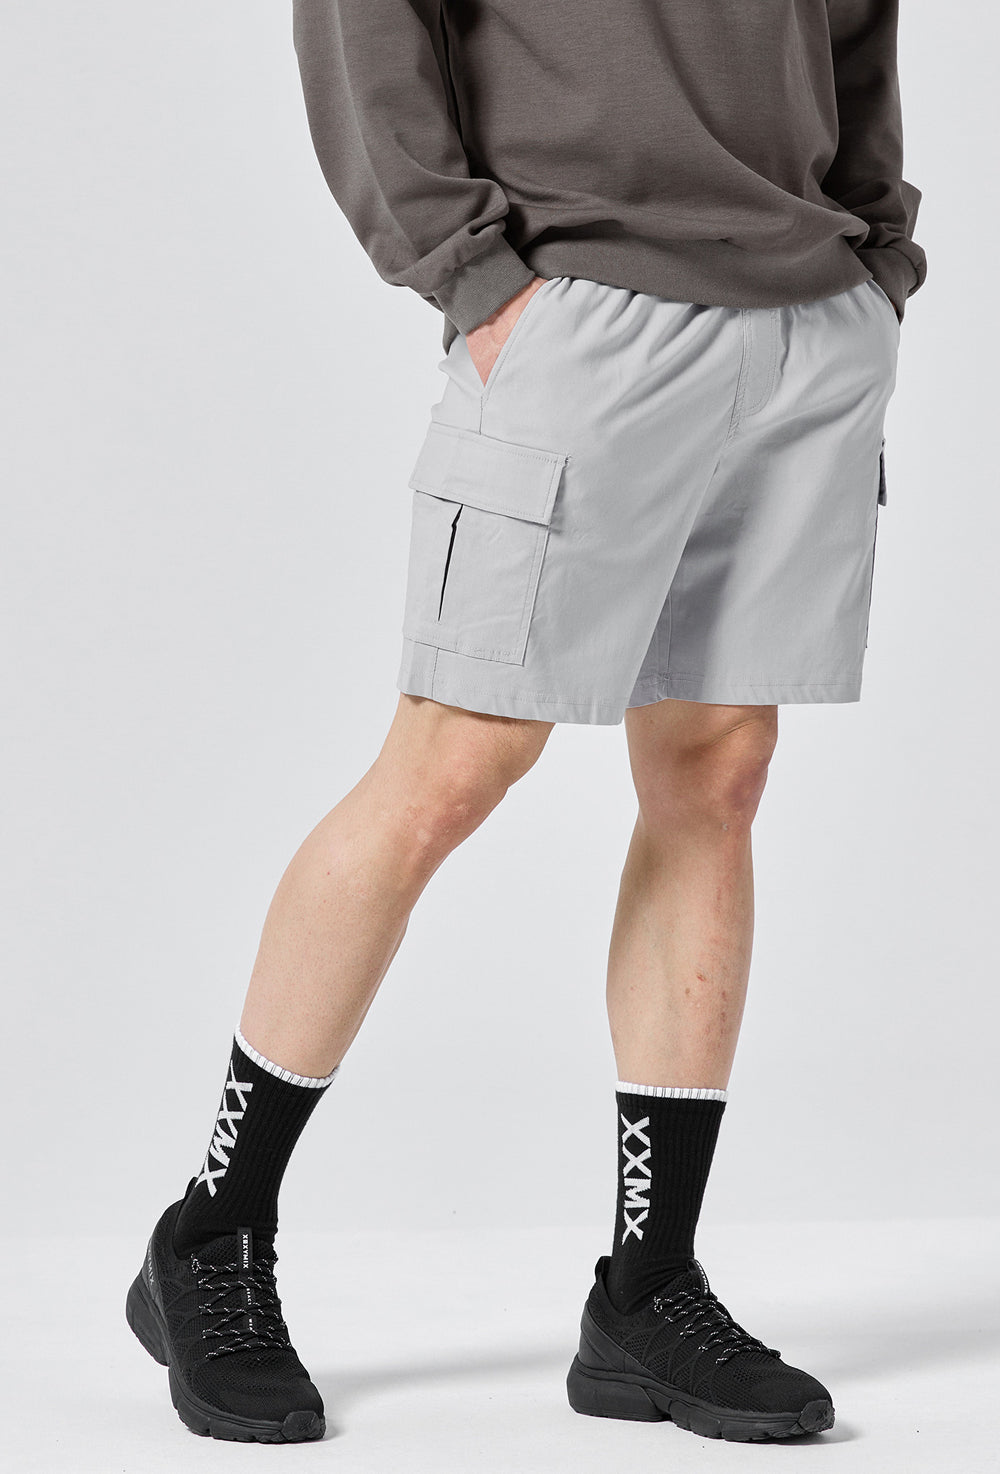 Hardy Stretch Cargo Shorts - Blend Light Gray